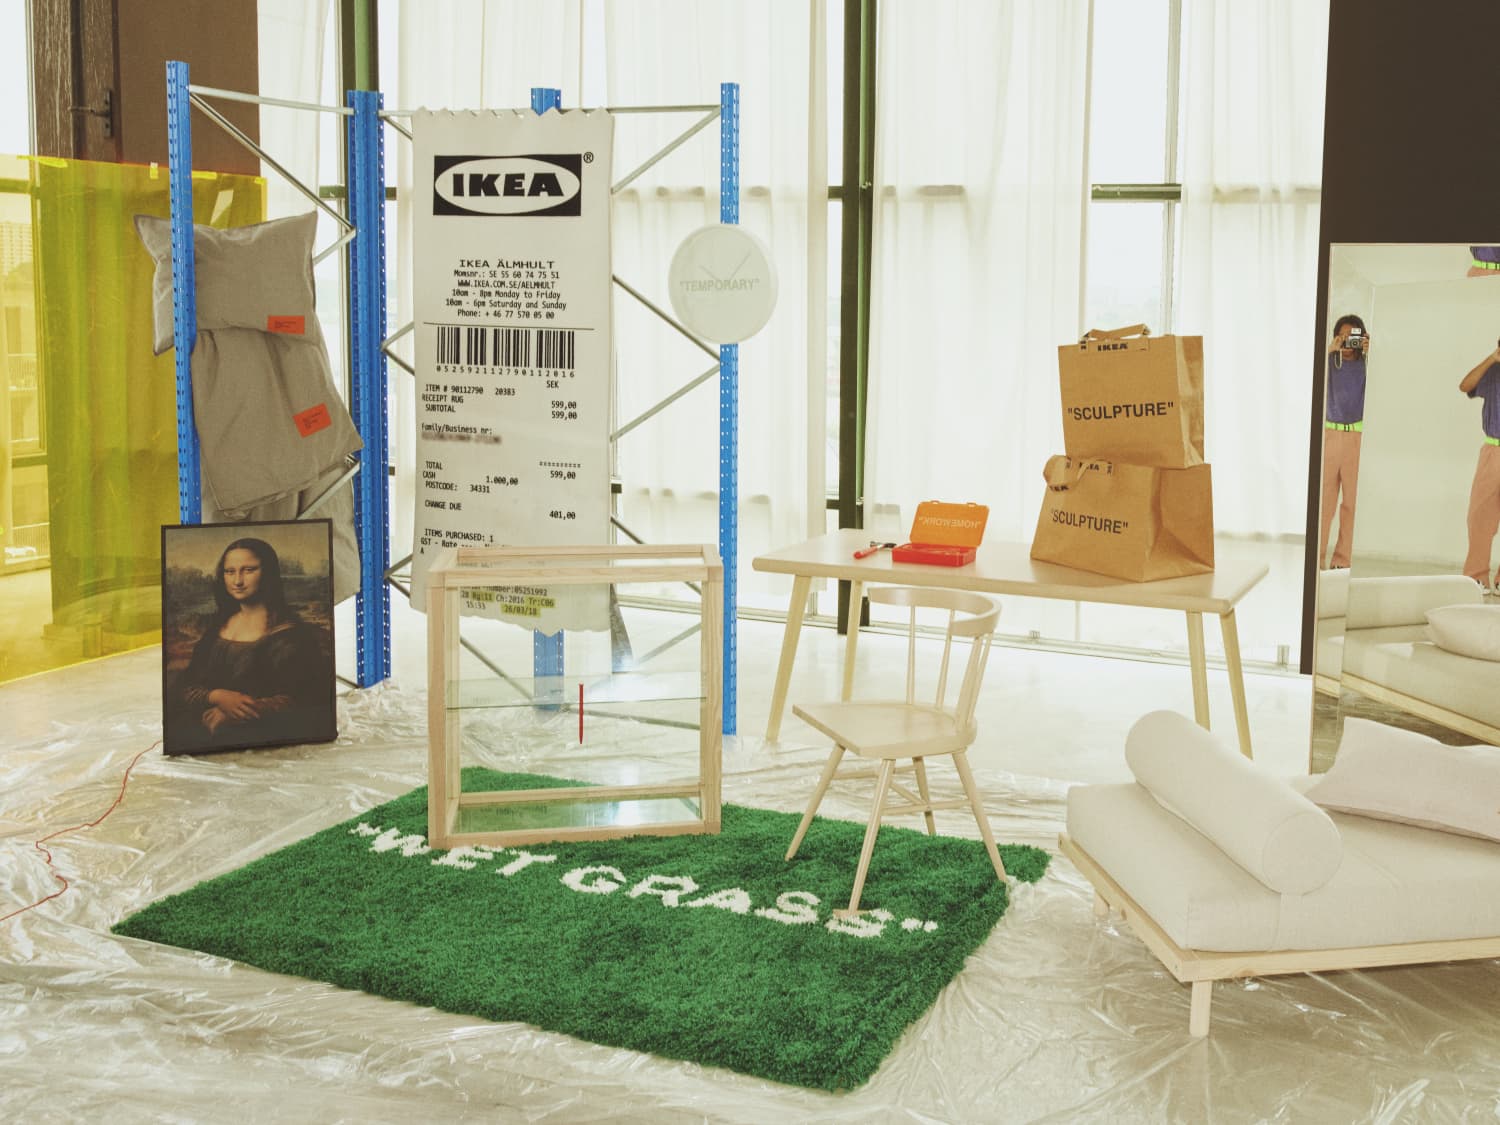 Ikea Virgil Abloh Date | vlr.eng.br